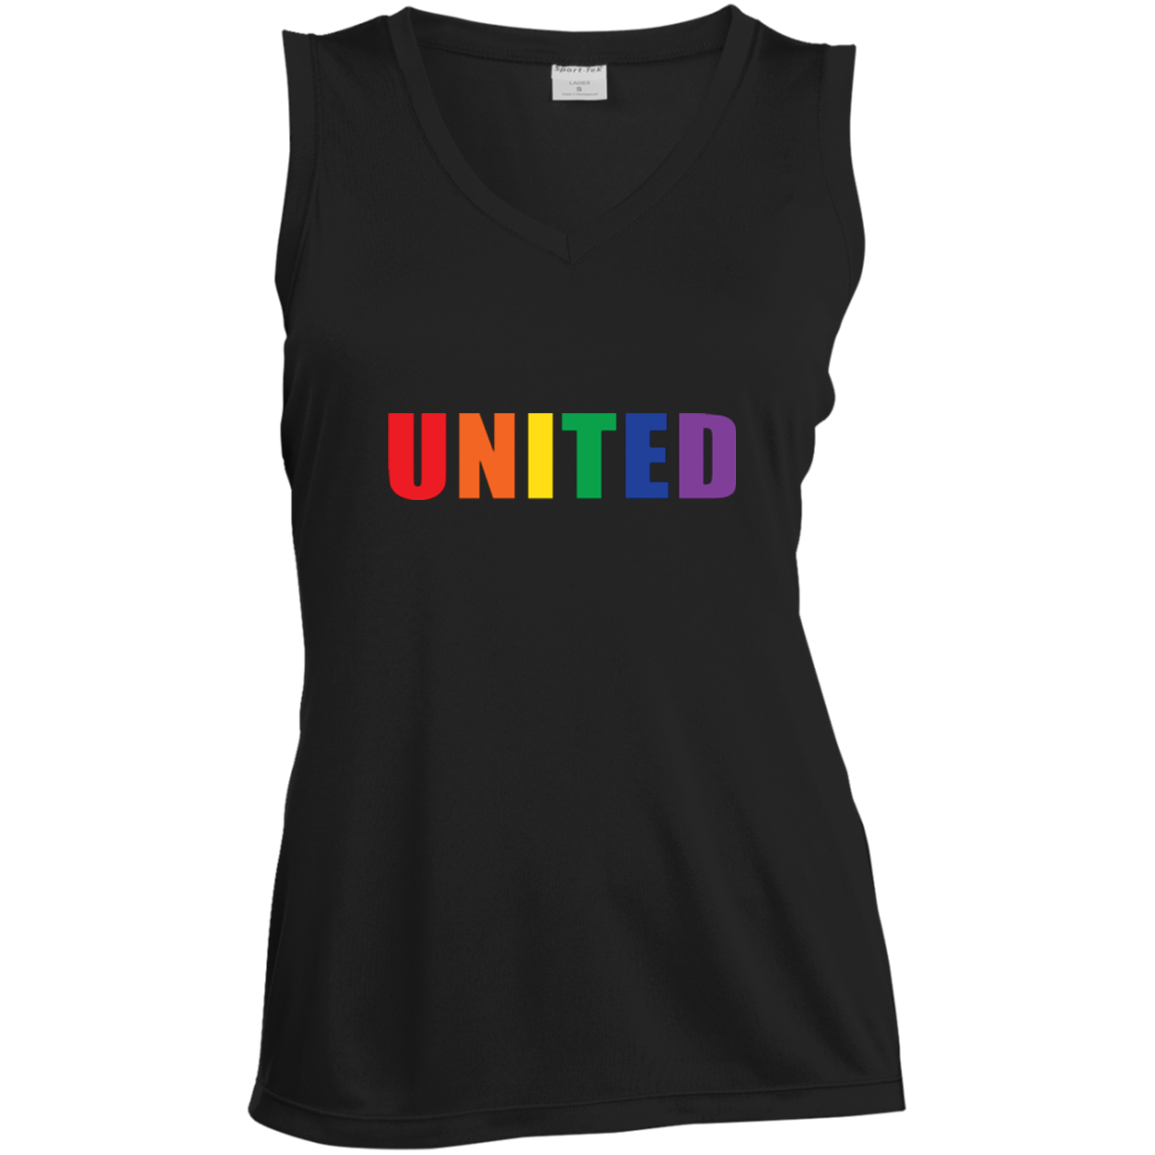 "United" Gay Pride v-Neck sleeveless black Shirt LGBT Pride Tshirt for women